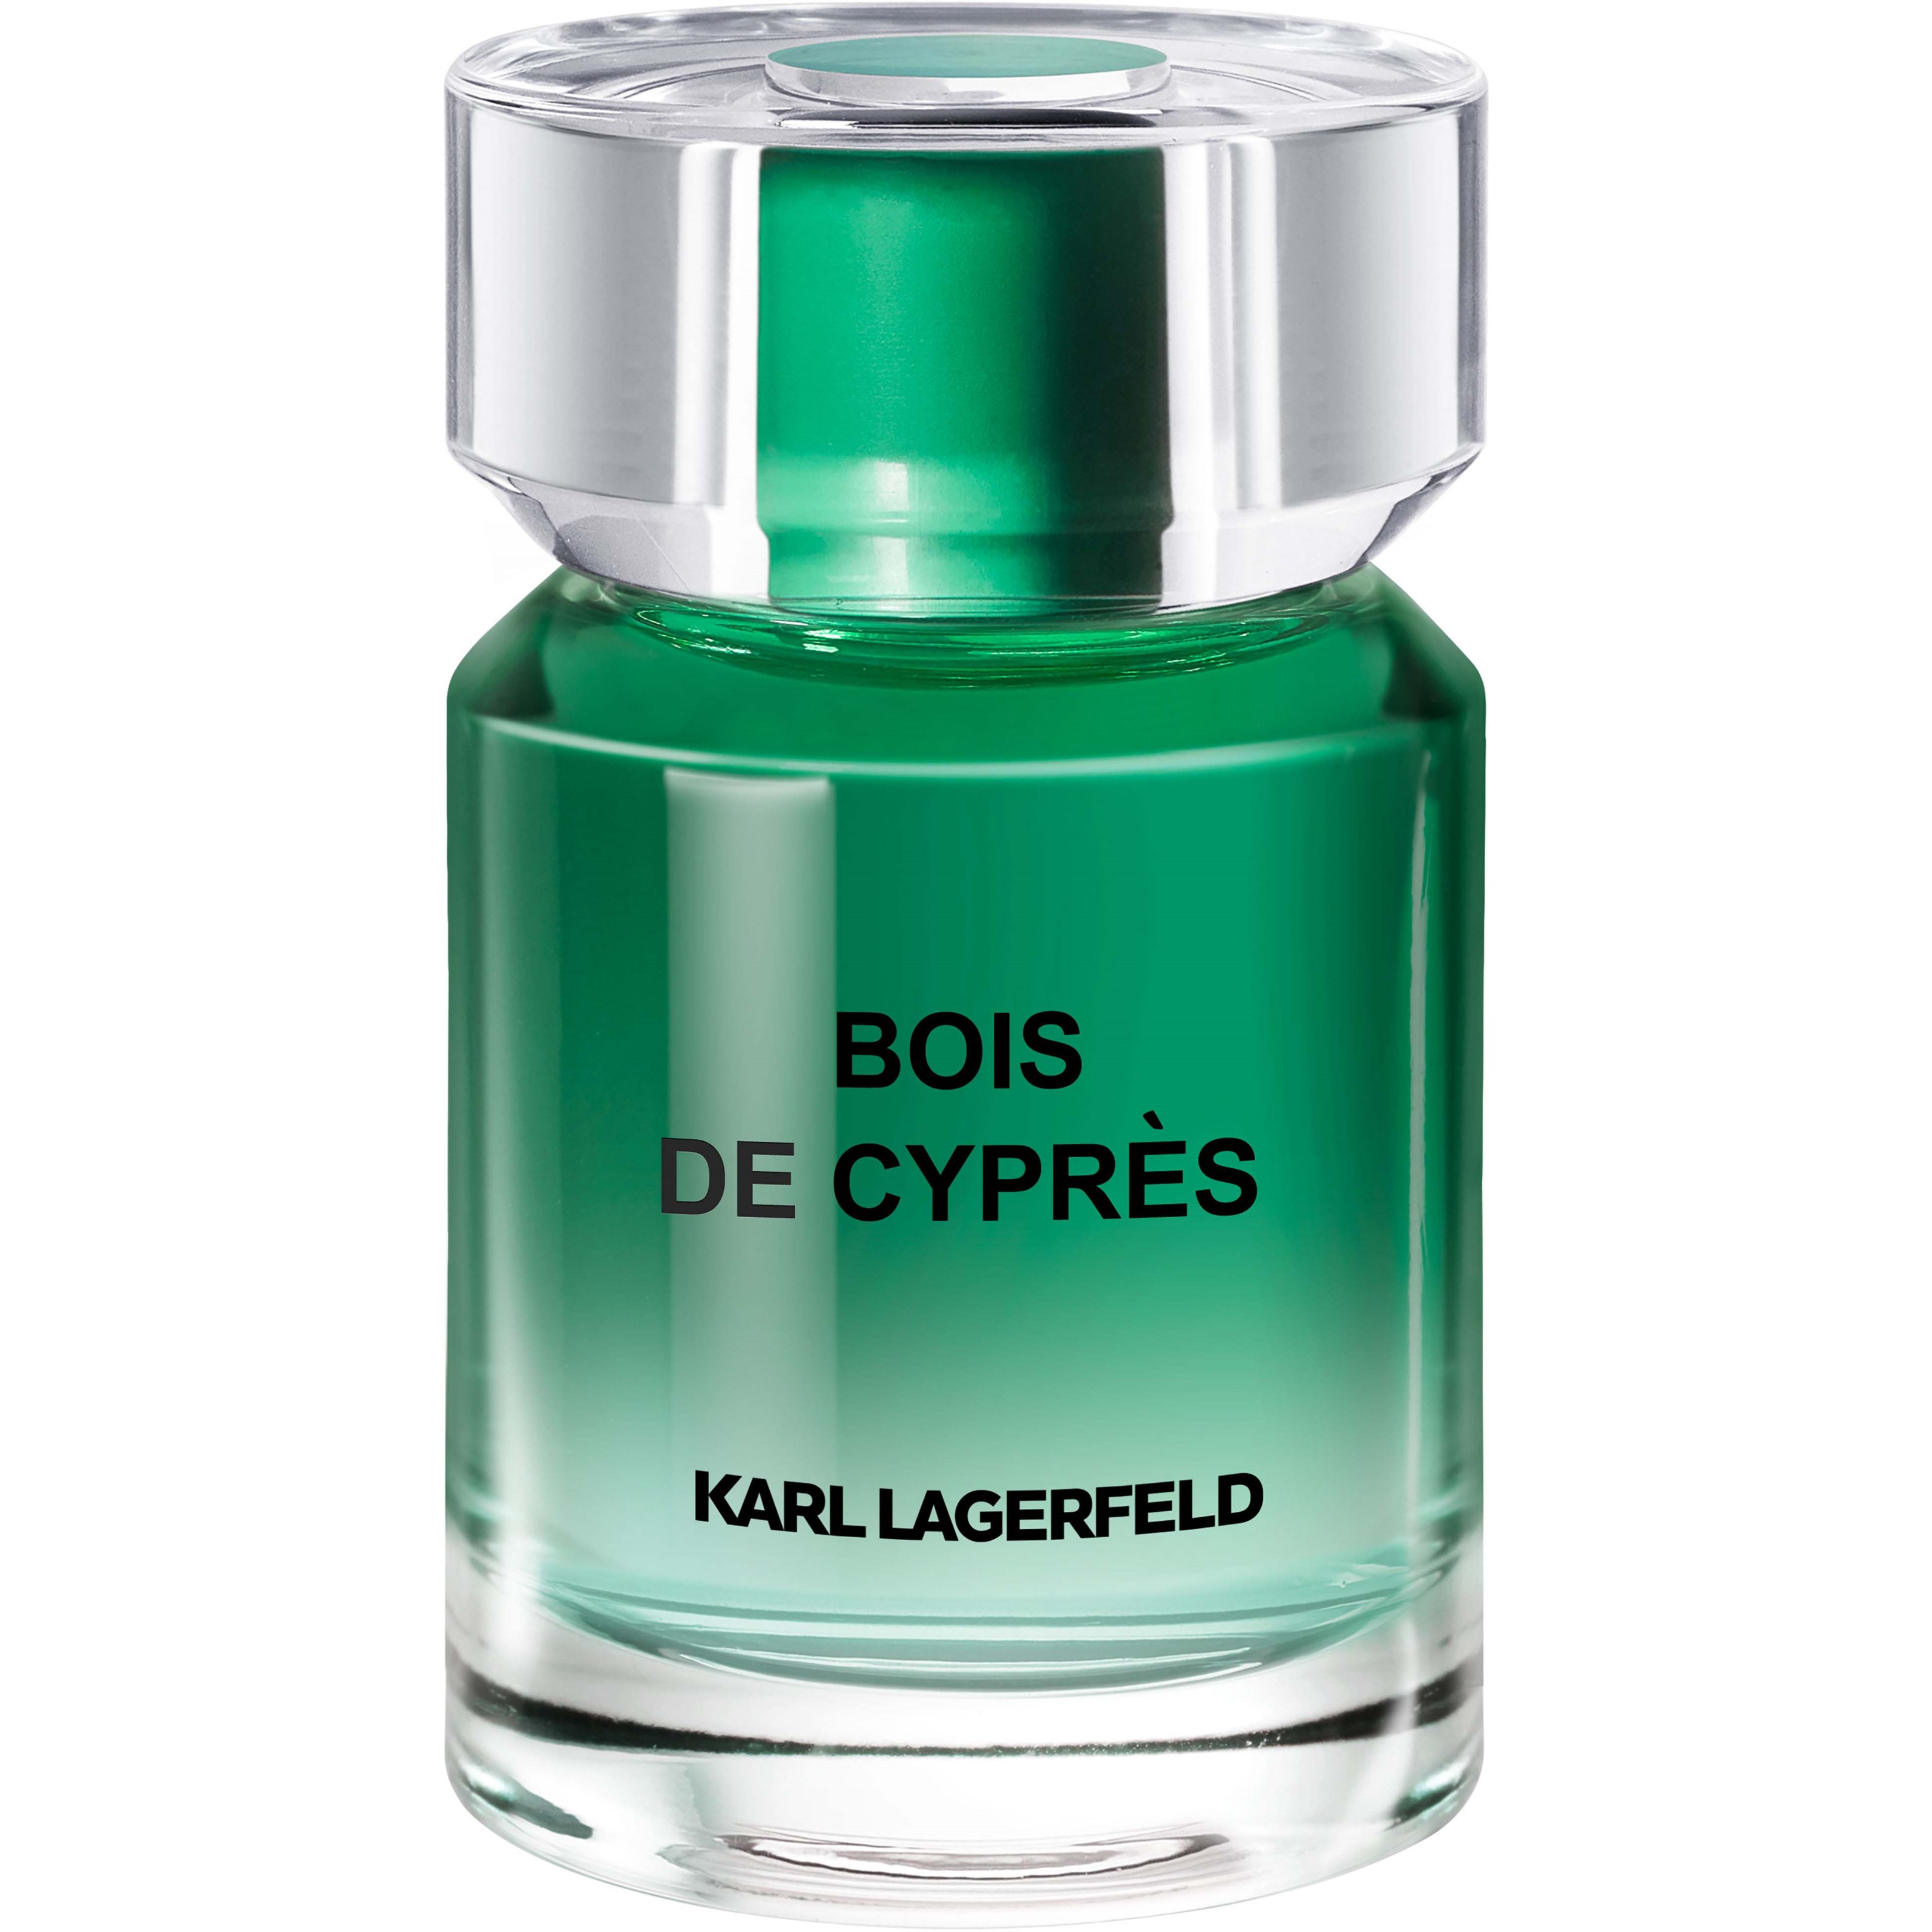 Zdjęcia - Perfuma męska Karl Lagerfeld Bois de Cypres Eau de Toilette 50 